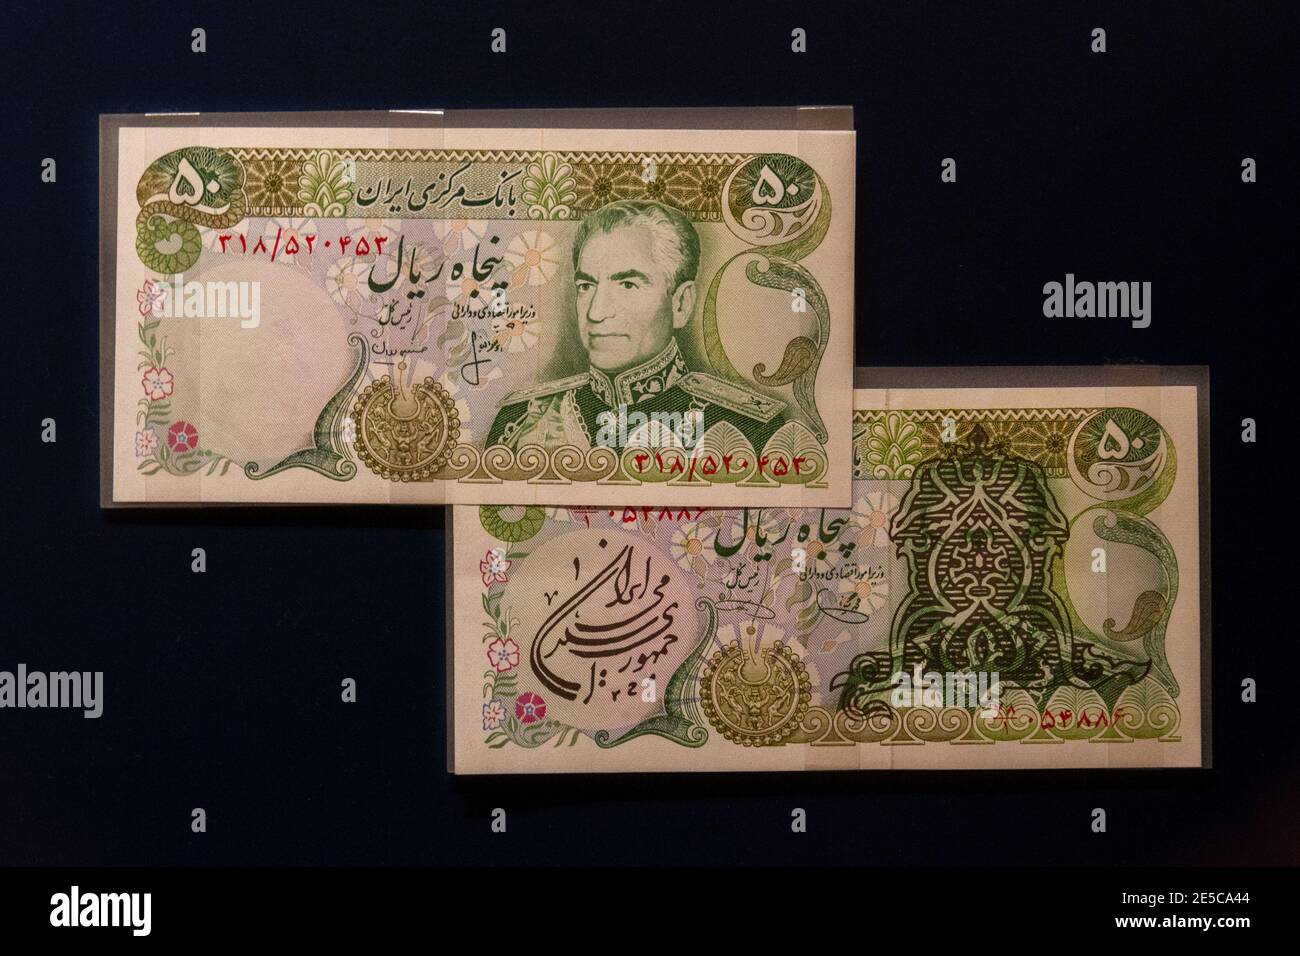 50 notes riales de Muhammad Reza Pahlavi, le Shah d'Iran, (en bas couvert après la révolution), The Money Gallery, Ashmolean Museum, Oxford, Royaume-Uni. Banque D'Images